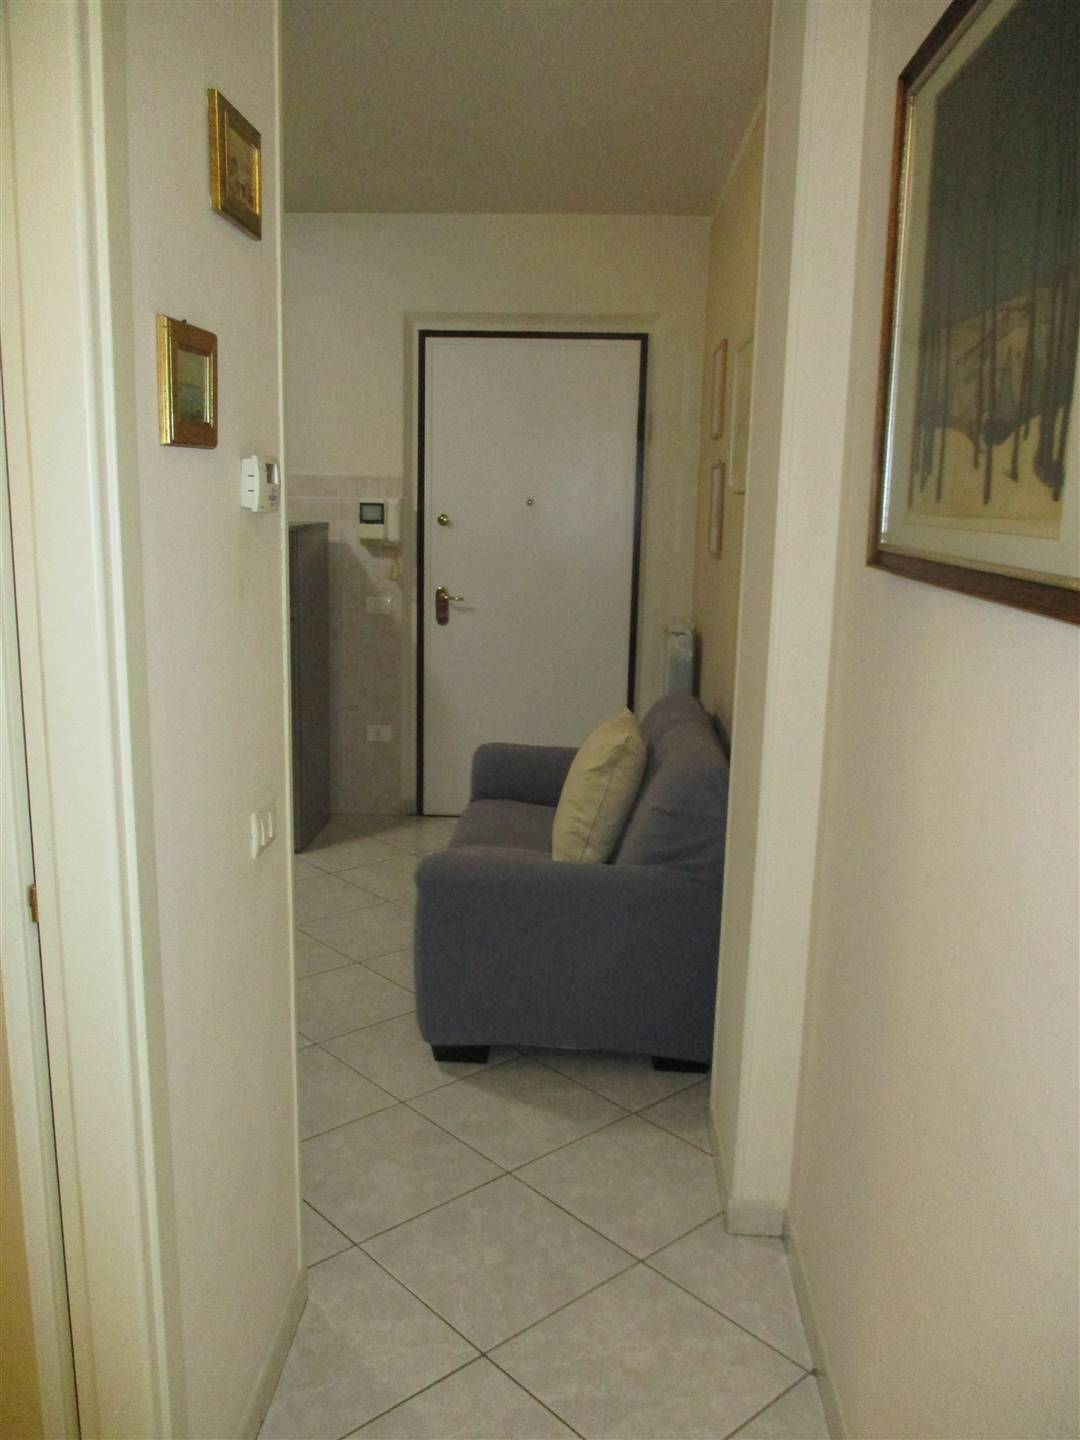 Appartamento in Vendita a Campi bisenzio zona San donnino - immagine 4